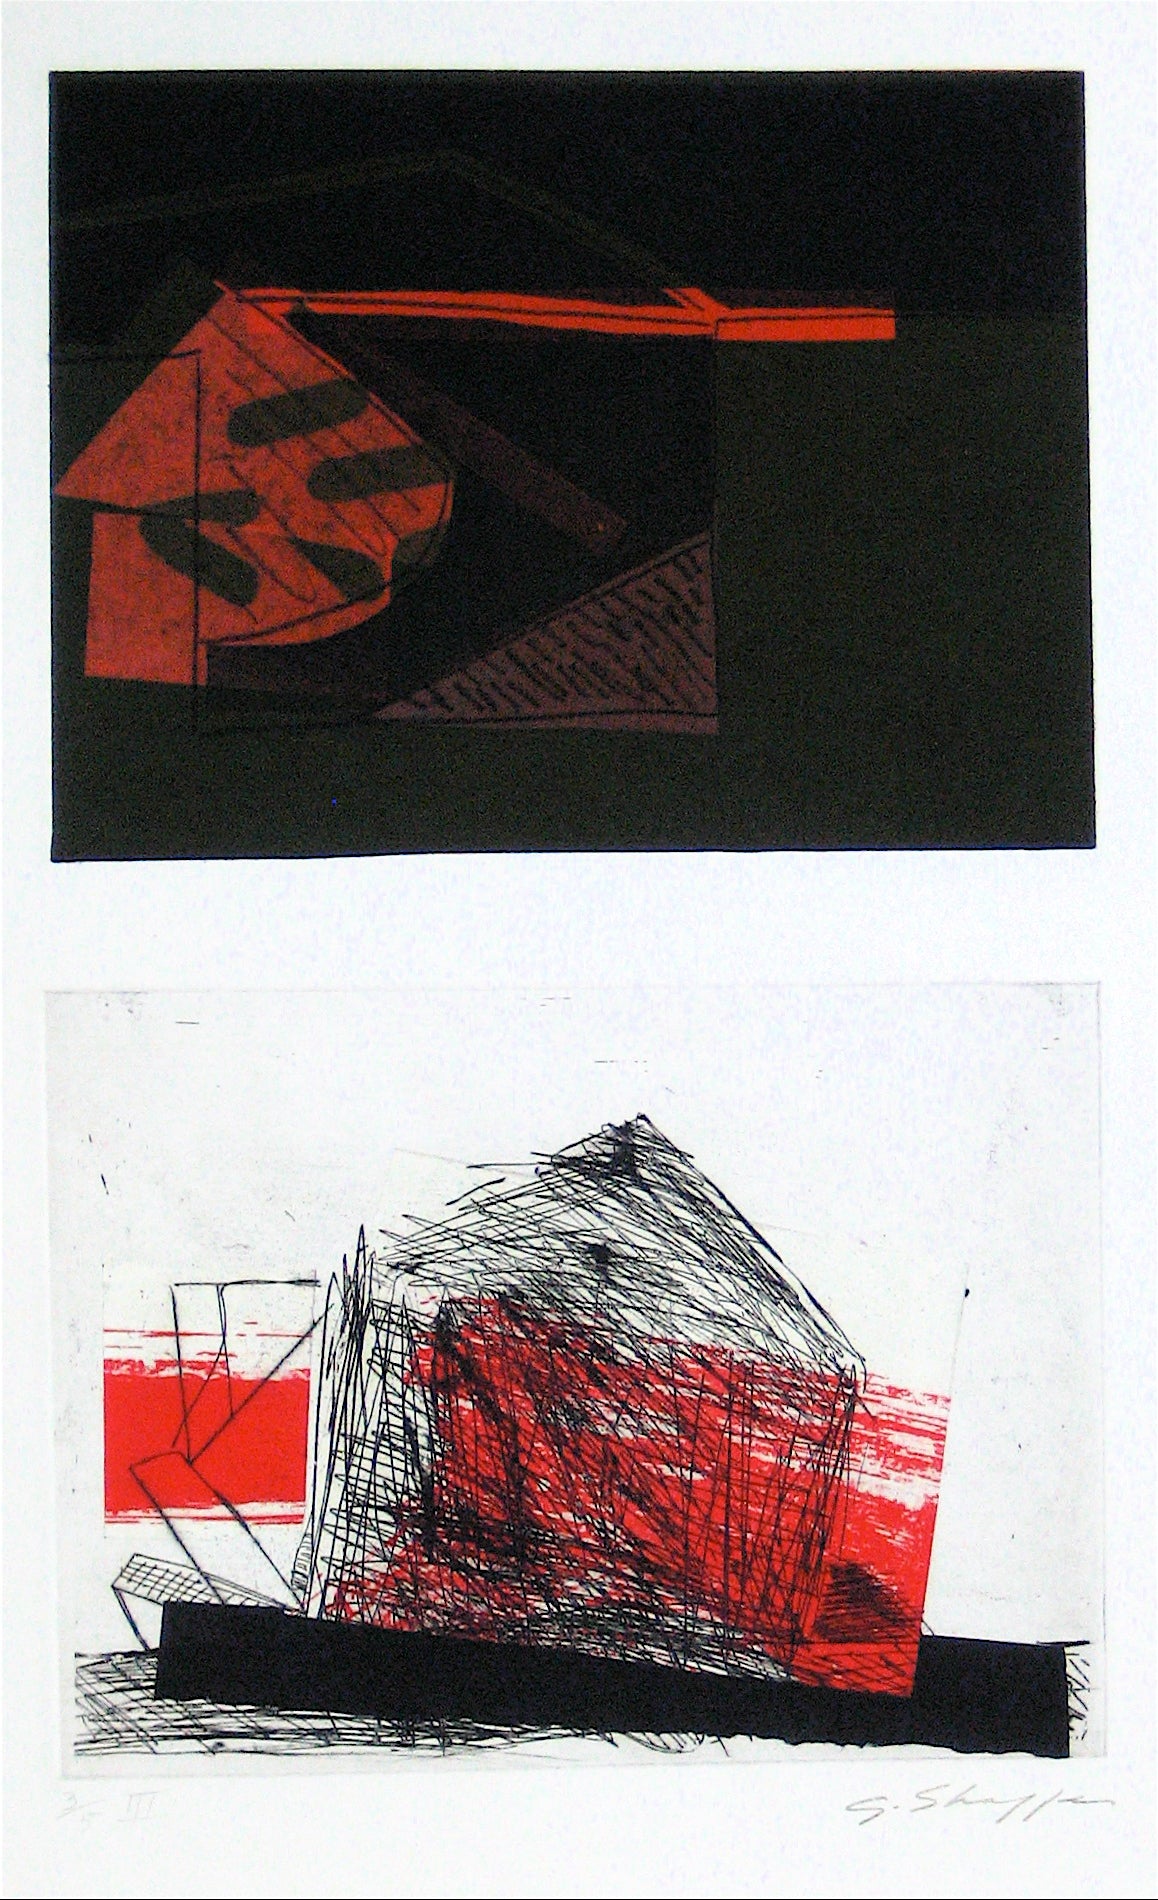 Abstracted Duel Image &lt;br&gt;1989 Litho &amp; Chine Colle &lt;br&gt;&lt;br&gt;#11773